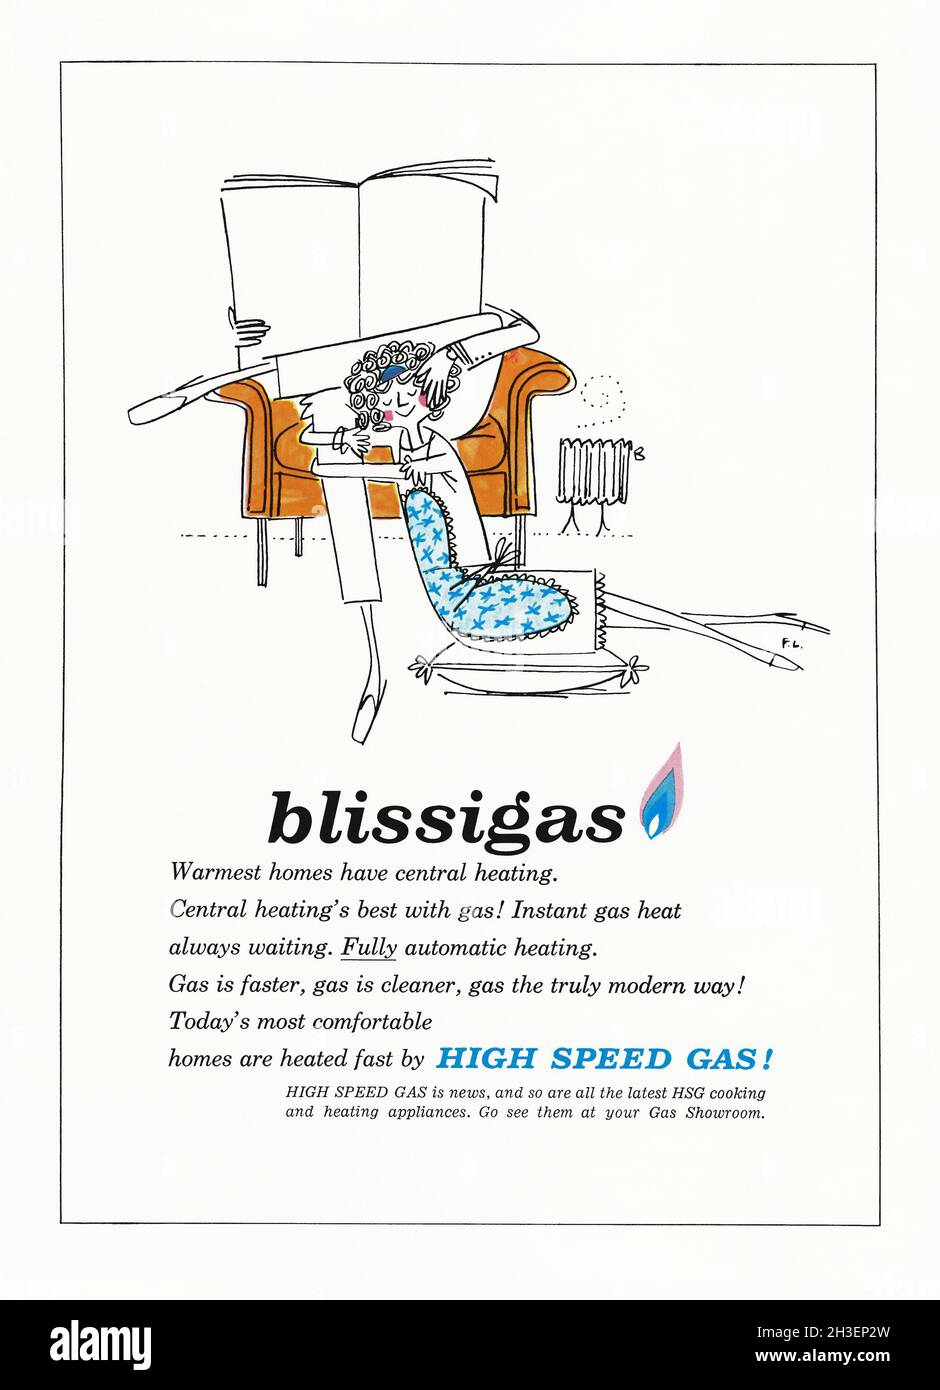 Une publicité des années 1960 pour le chauffage central au gaz de la maison de «Blissigas».La publicité est apparue dans un magazine publié au Royaume-Uni en octobre 1962.Le couple de dessins animés se détendent dans leur salon chauffé au radiateur.La copie indique que le gaz a été considéré comme une forme d'énergie «plus propre».La publicité a été produite par le Gas Council, un organisme gouvernemental britannique qui a assuré une surveillance stratégique de l'industrie du gaz – graphiques vintage des années 1960. Banque D'Images